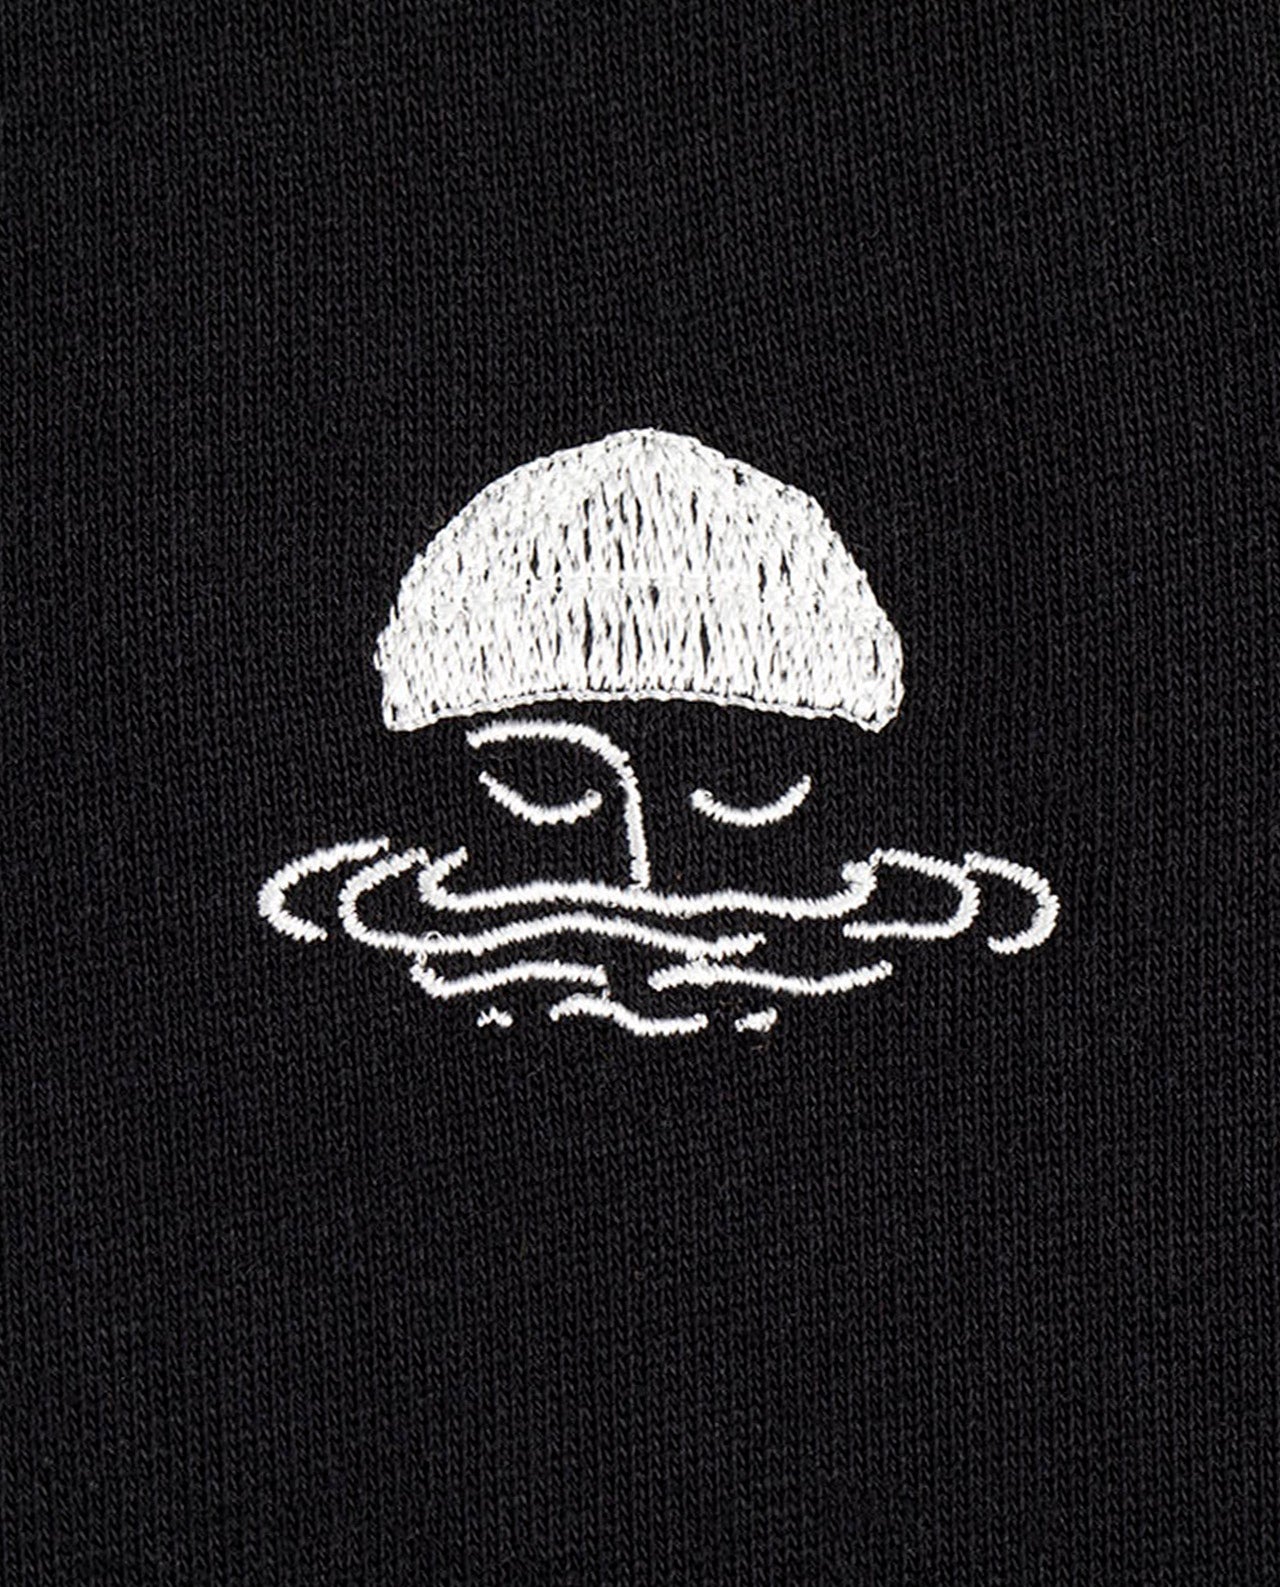 marché commun bask in the sun sweatshirt noir brodé logo marin éco-responsable éthique